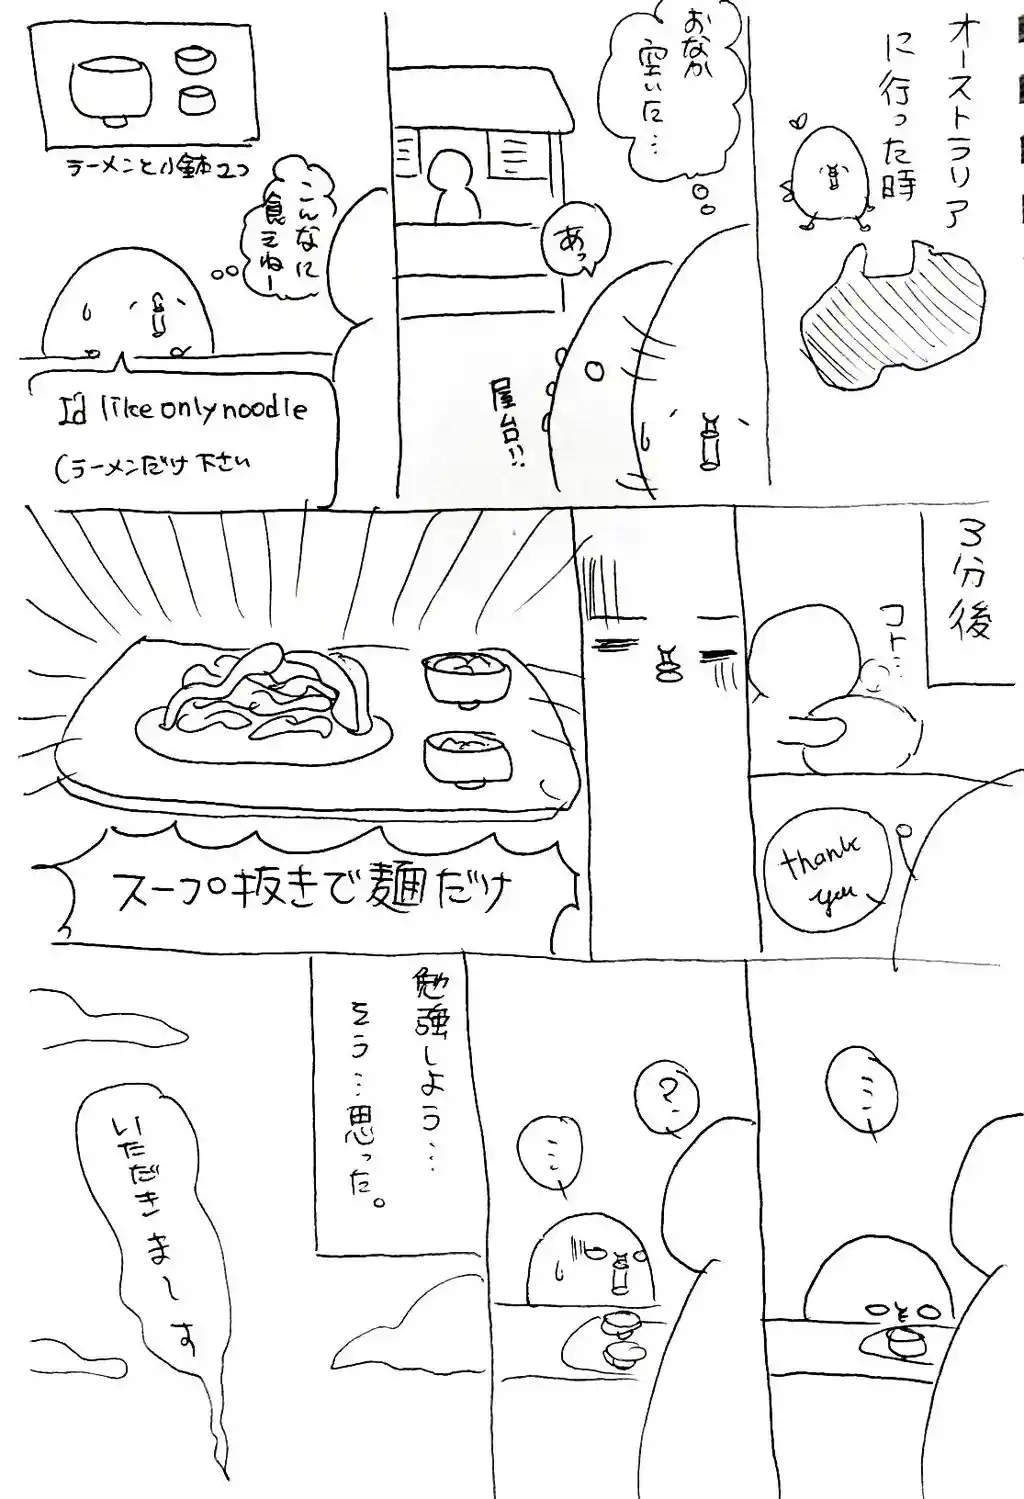 オンリーヌードル【ツイ】 (2).jpg